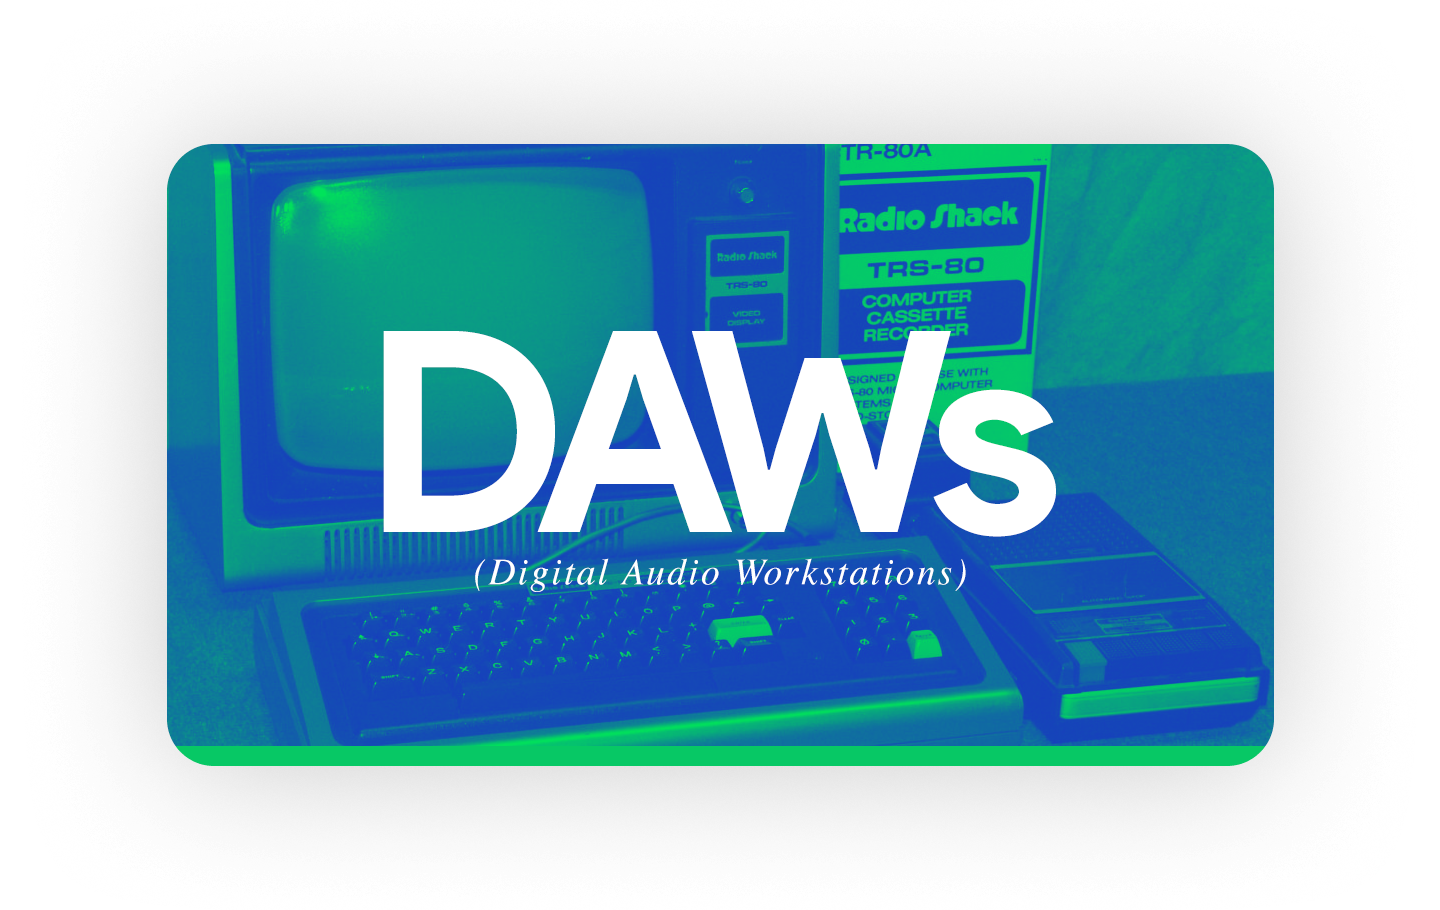 foto de um computador antigo para representar o início das DAWs